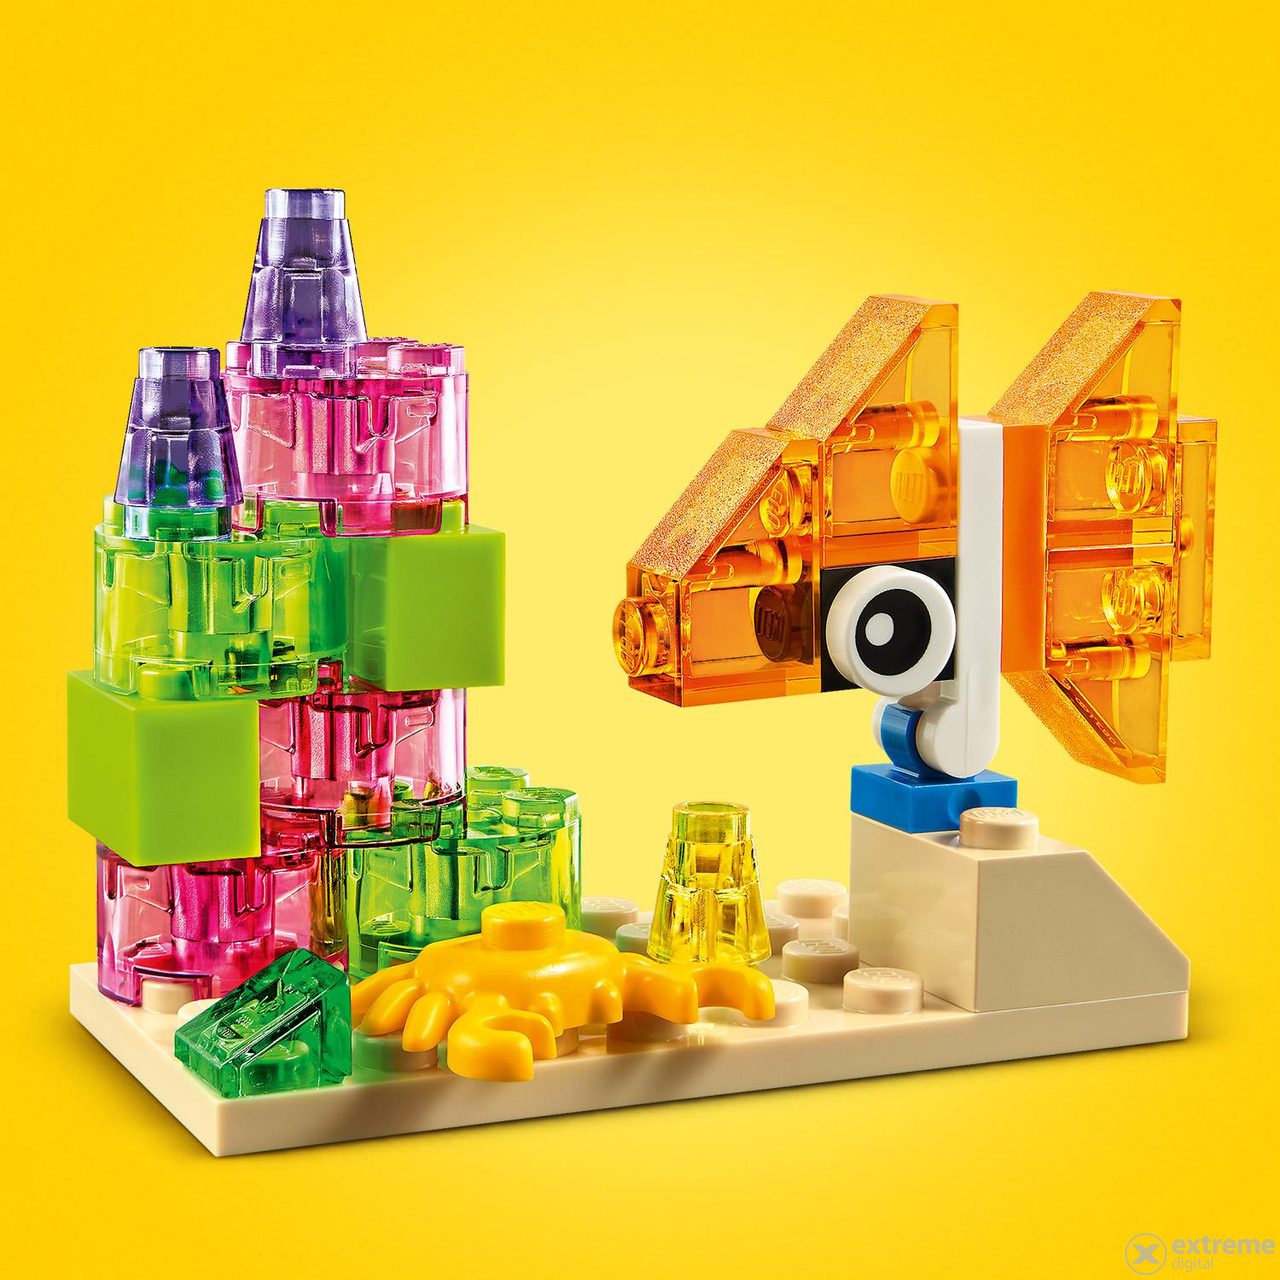 LEGO®  Classic 11013 Kreativ-Bauset mit durchsichtigen Steinen